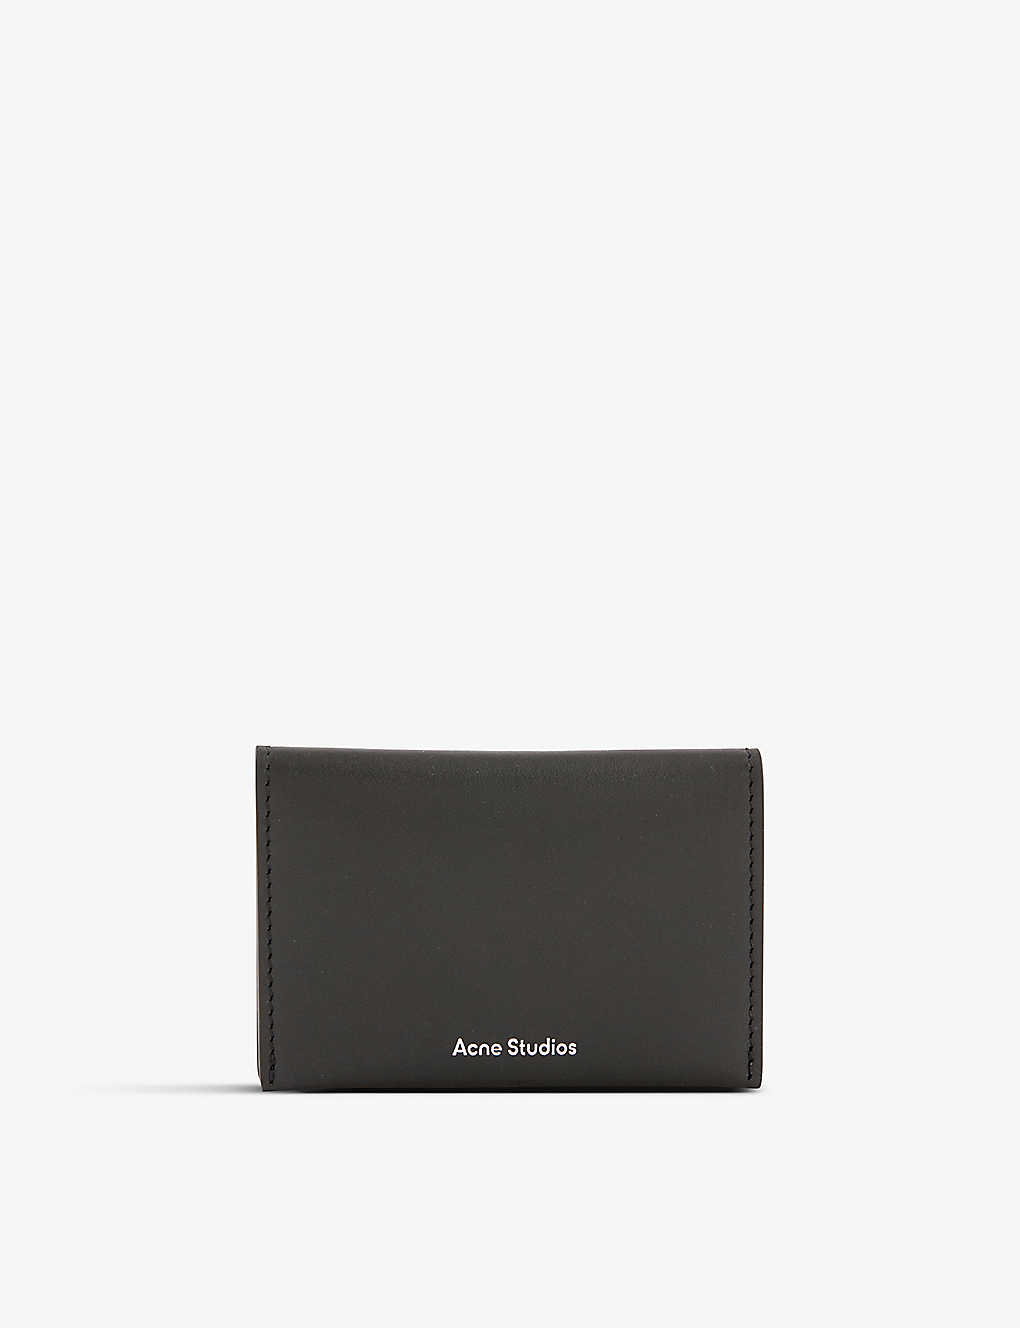 Acne Studios Black Foil-branded Leather Card Holder